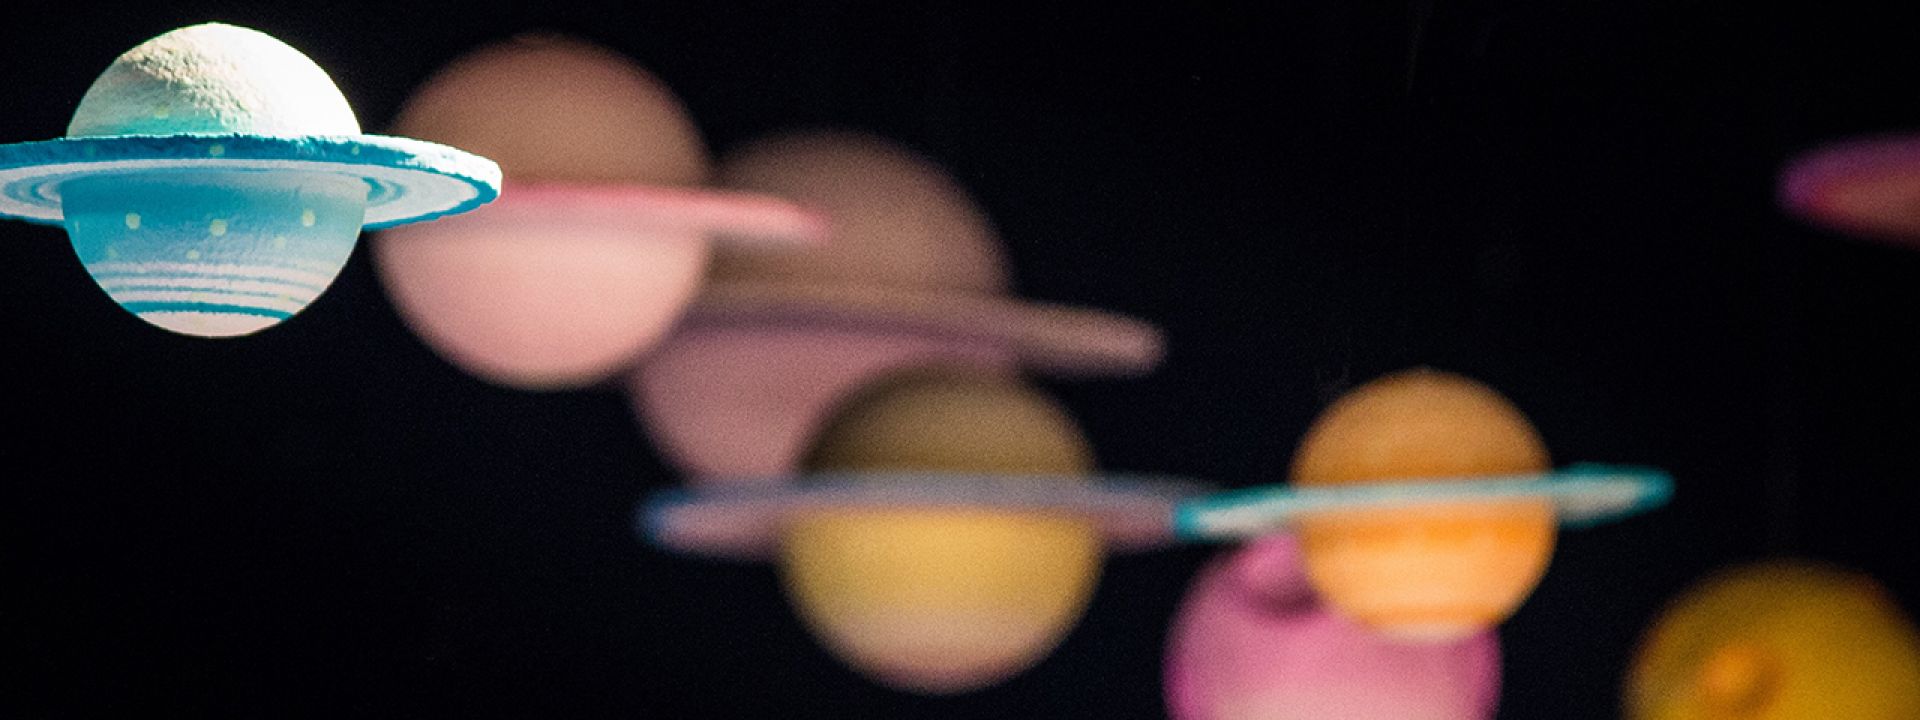 Φωτογραφία που απεικονίζει πλανήτες σε τροχιά